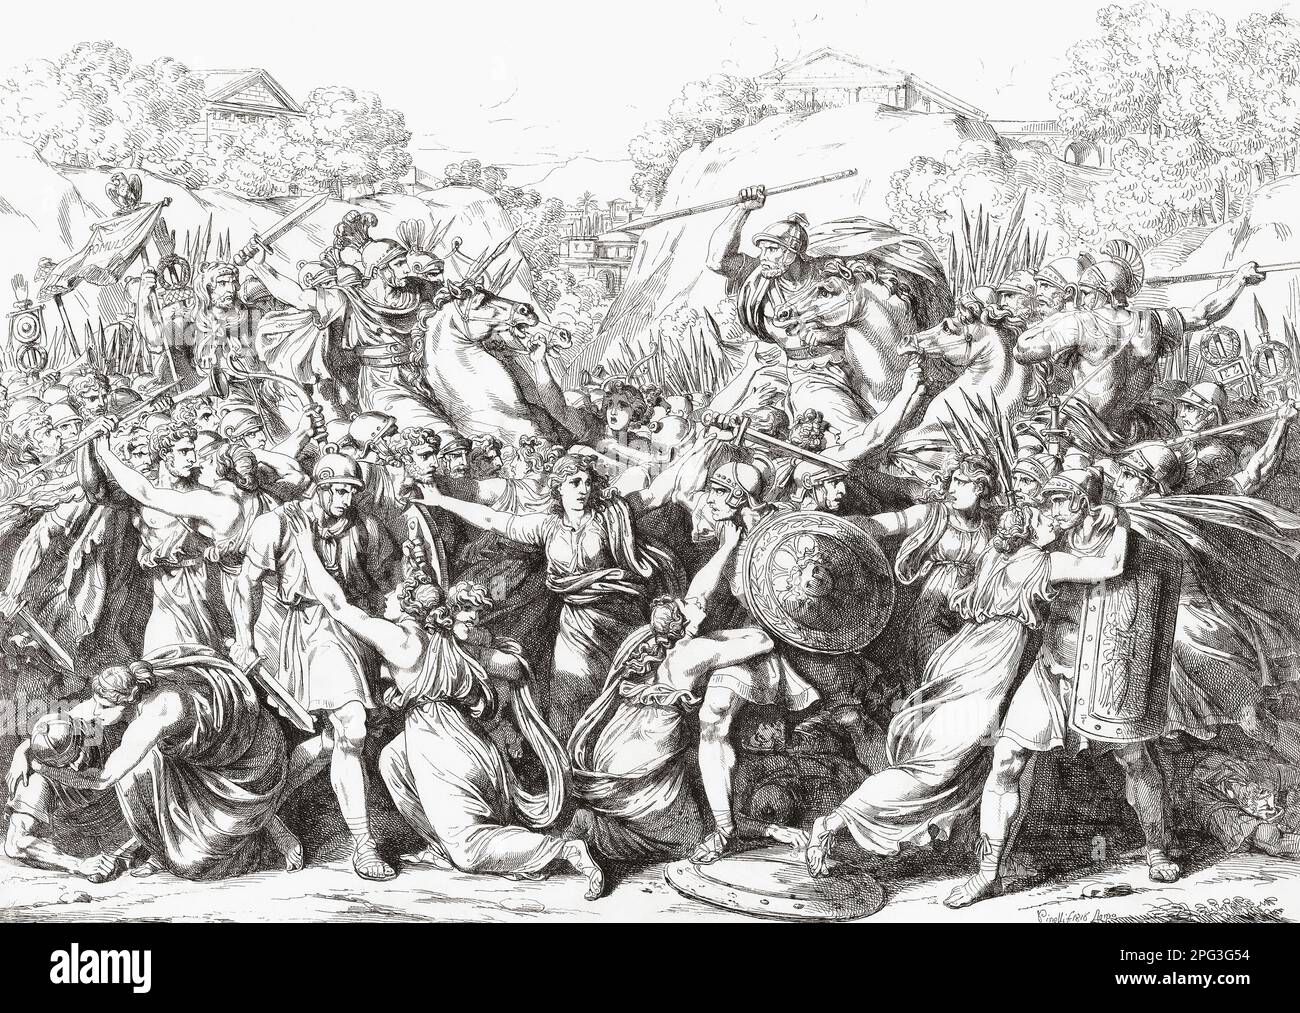 Le donne Sabine intervengono tra le parti in guerra nella battaglia del Lacus Curtius. Un incidente nella mitologia romana. Dopo un'opera del 19th° secolo di Bartolomeo Pinelli. Foto Stock